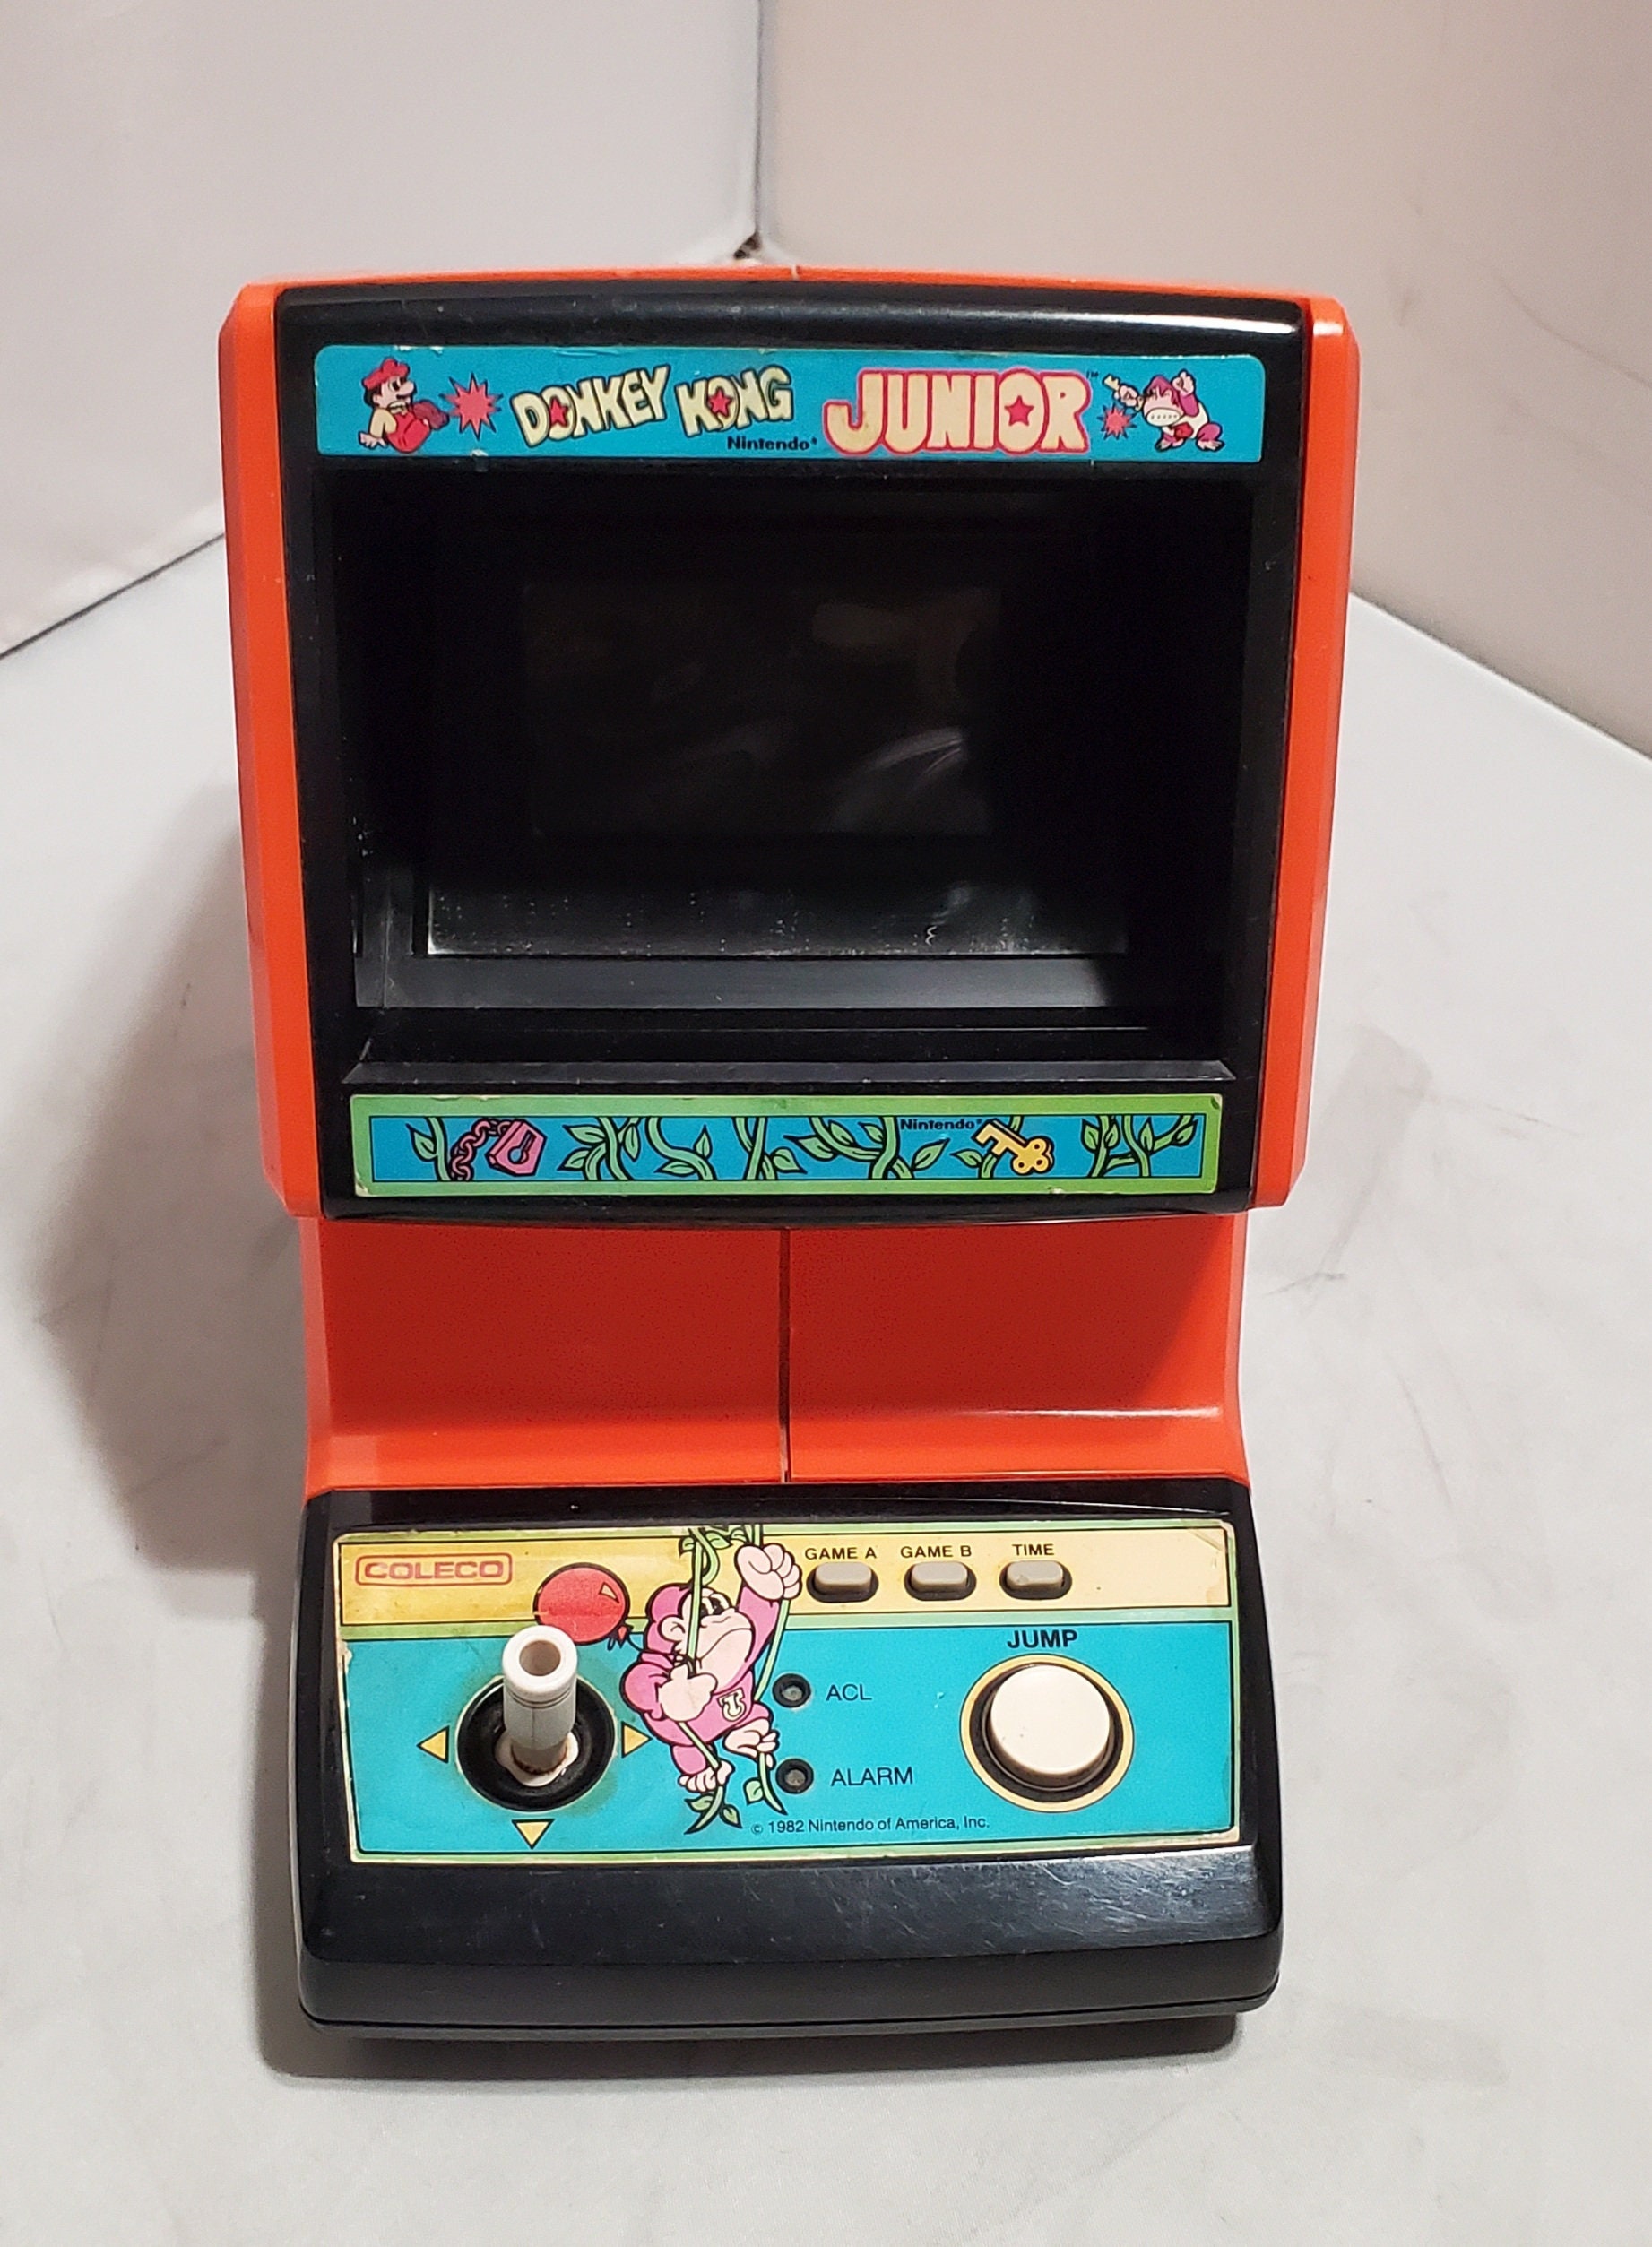 slave prøve komme ud for Nintendo Game & Watch Donkey Kong Junior Tabletop Game - Etsy